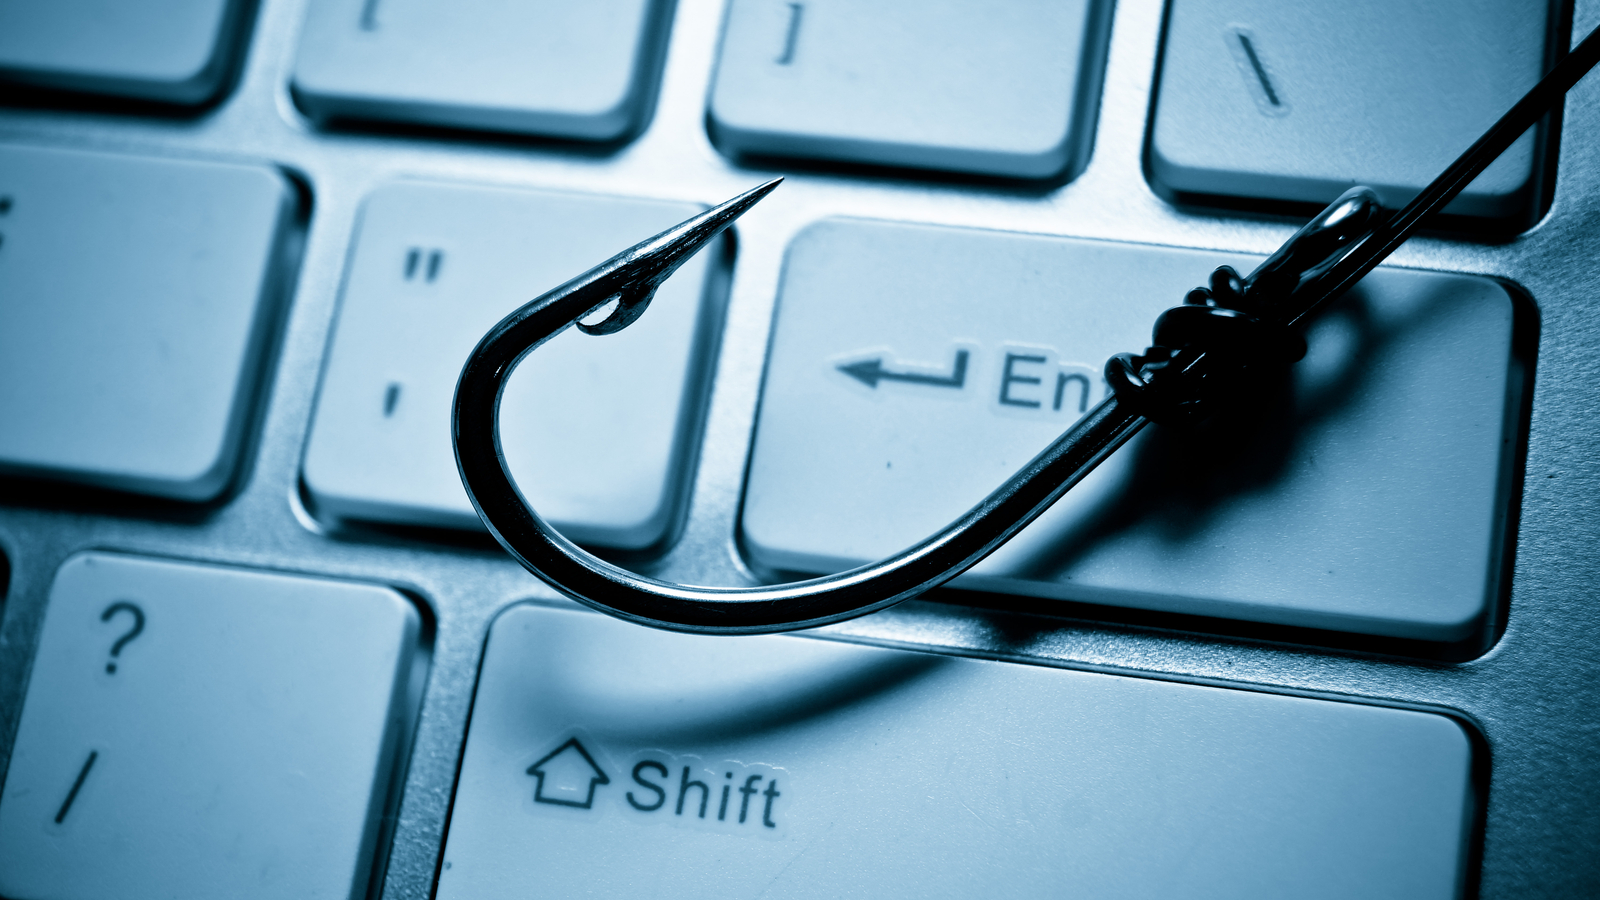 Les campagnes de phishing utilisent un nouvel outil pour éviter la détection : les symboles mathématiques